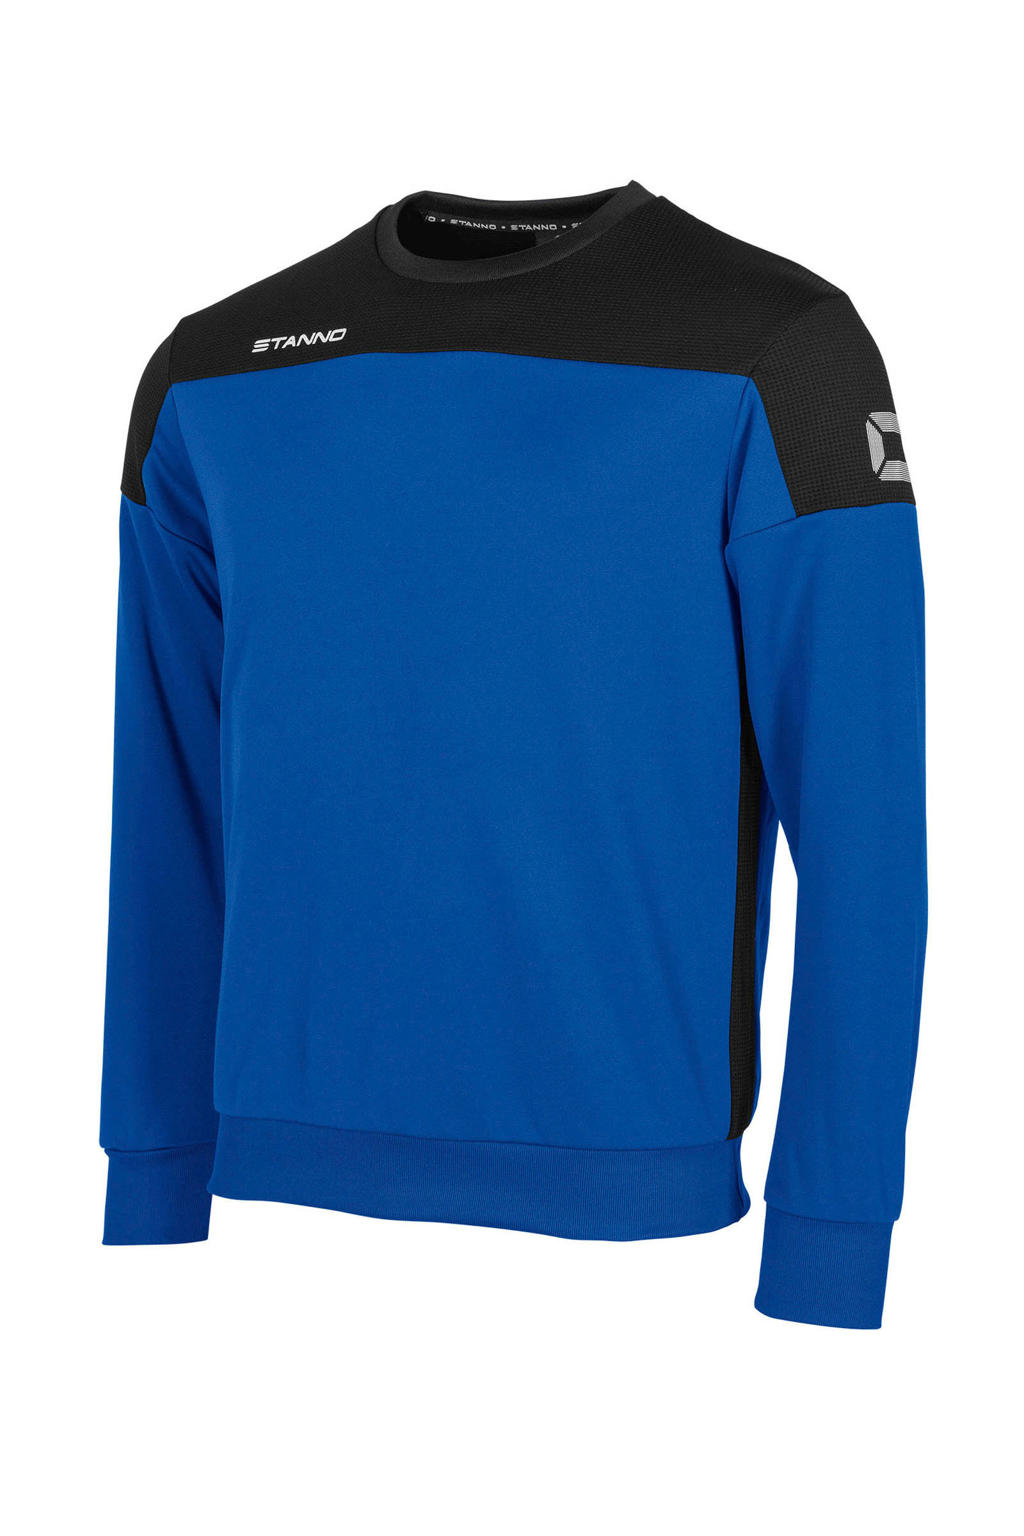 Blauw en zwarte jongens Stanno voetbalsweater van polyester met lange mouwen en ronde hals